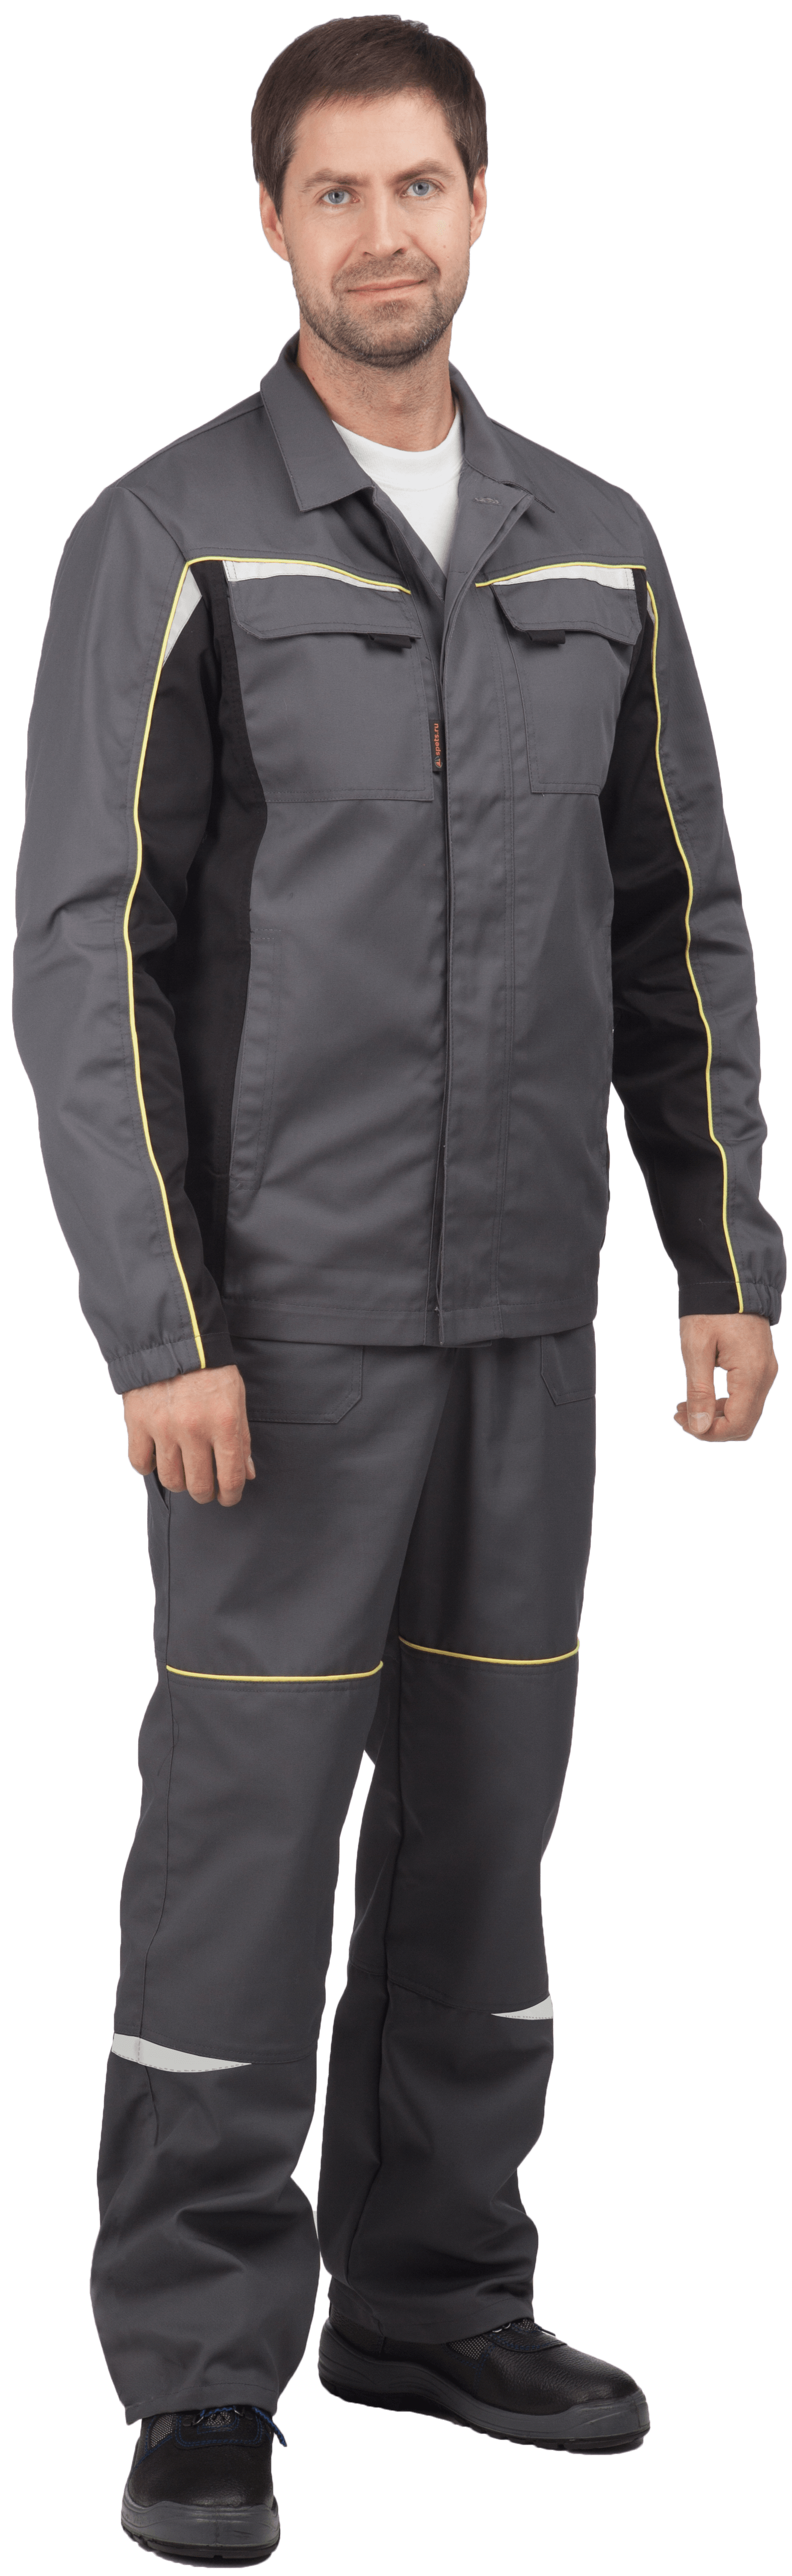 Костюм мужской ФОРСАЖ от механических воздействий и ОПЗ (куртка, брюки), серый/чёрный